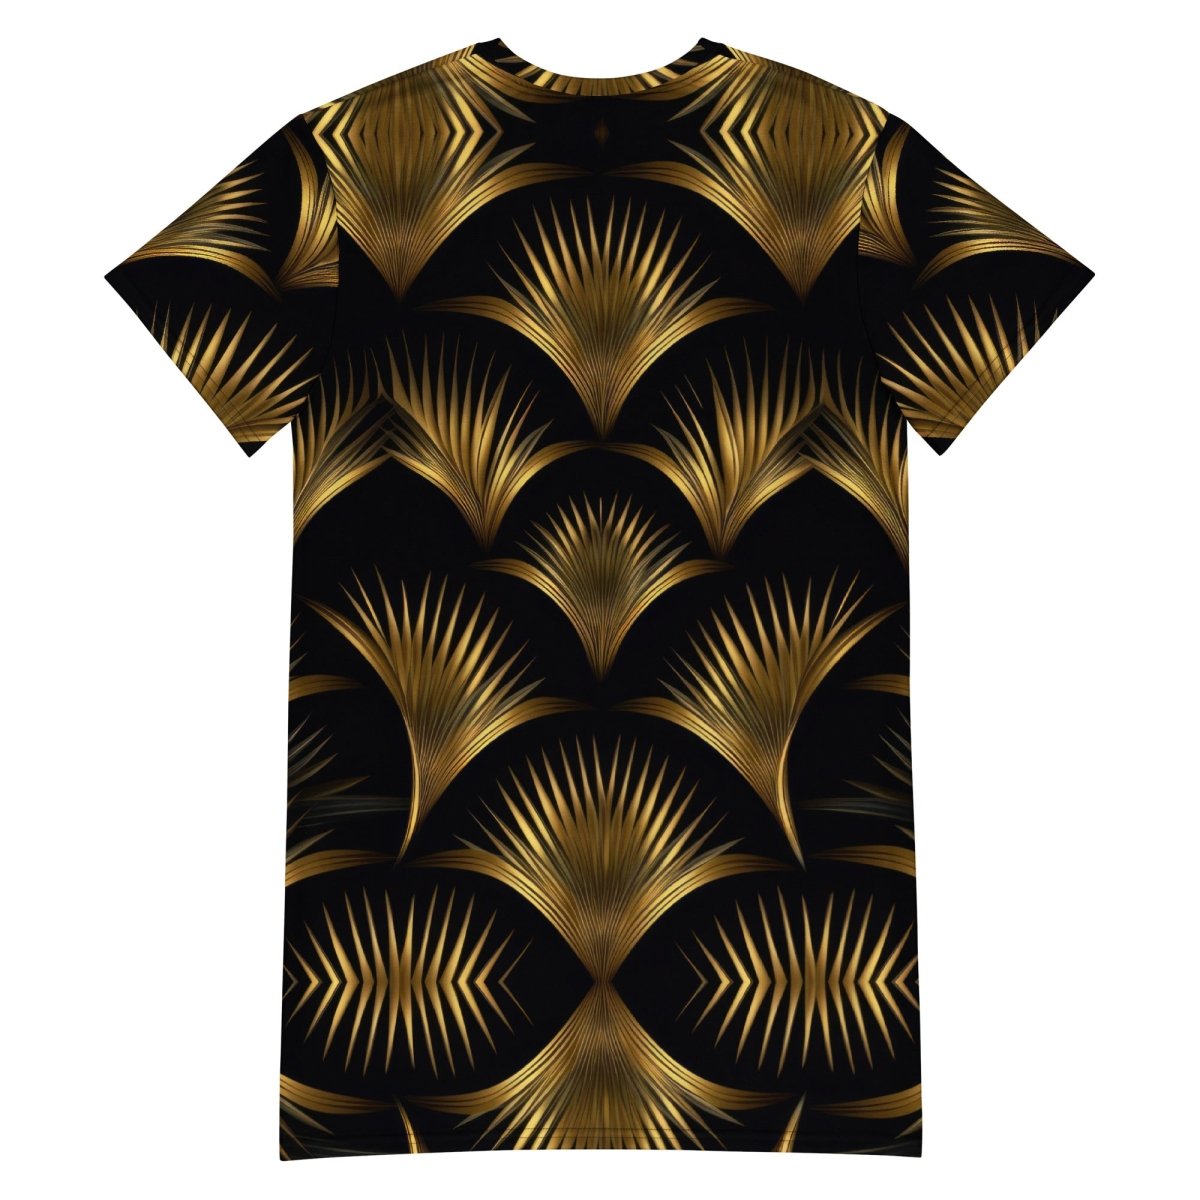 Sefira Golden Summer T-shirt dress | Sefira Beach Collection Woman - Sefira Collections